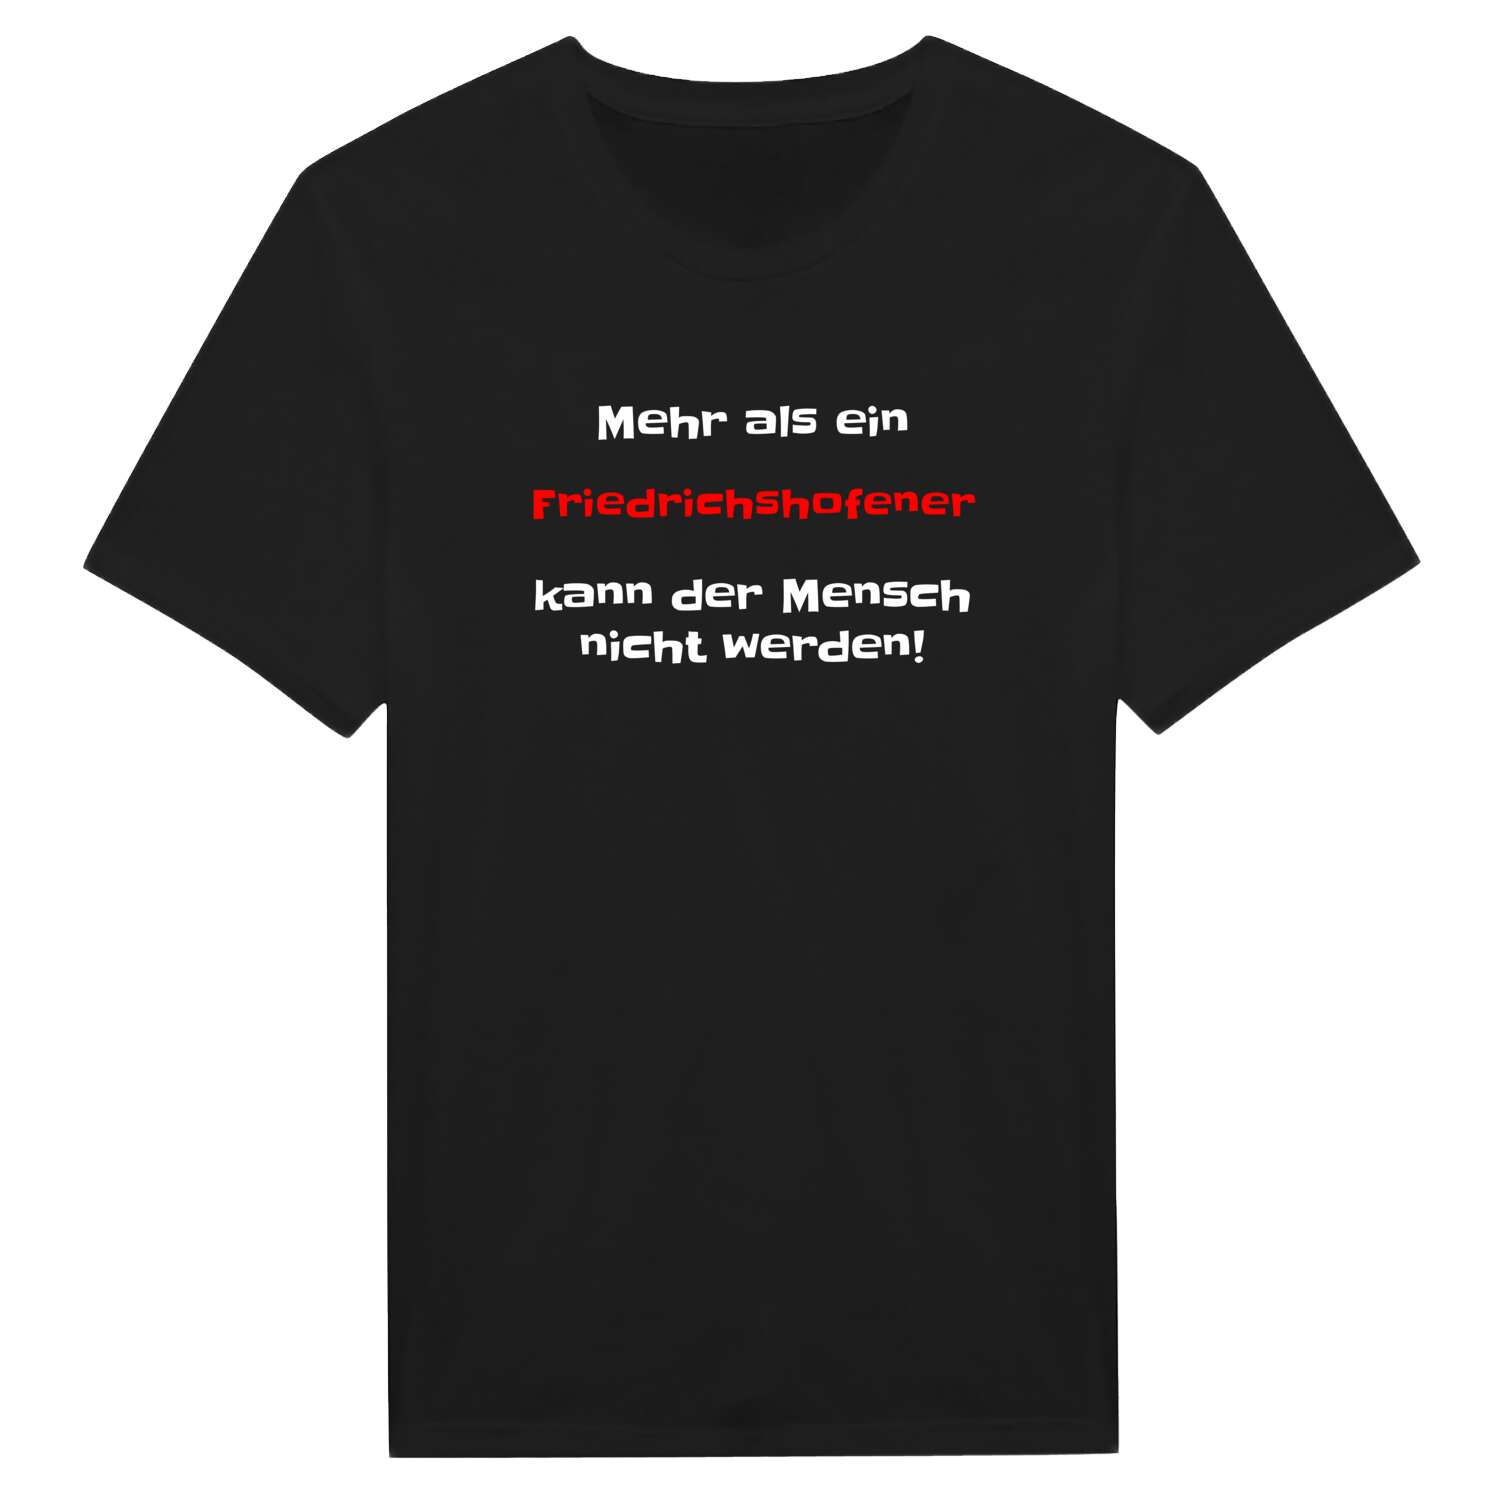 Friedrichshofen T-Shirt »Mehr als ein«